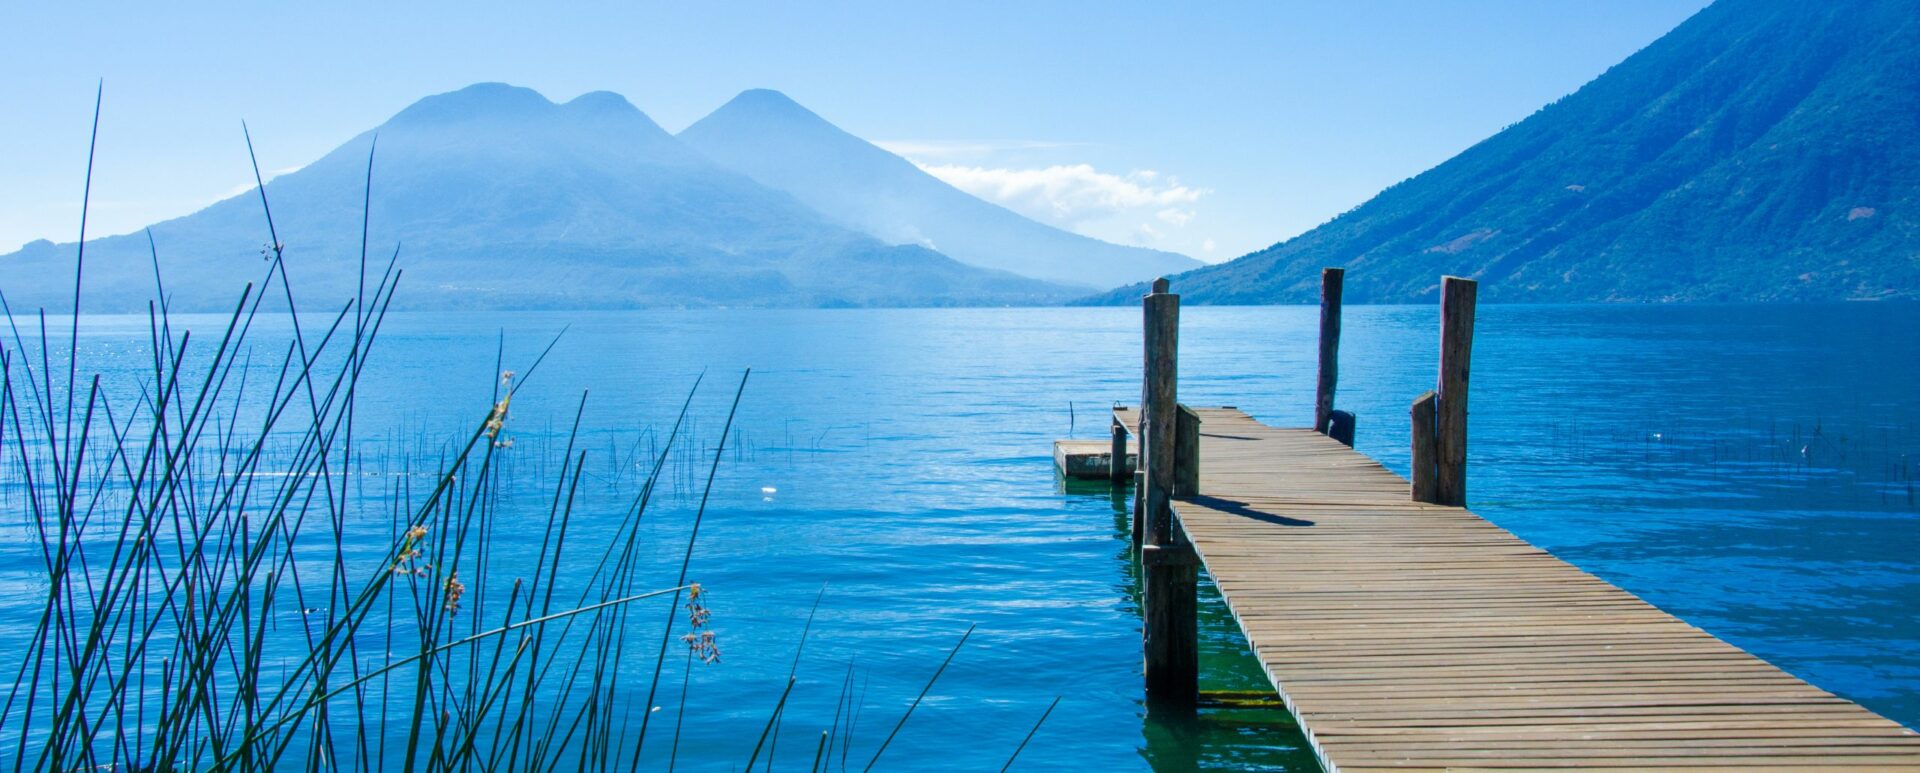 lake Atitlan in Guatemala